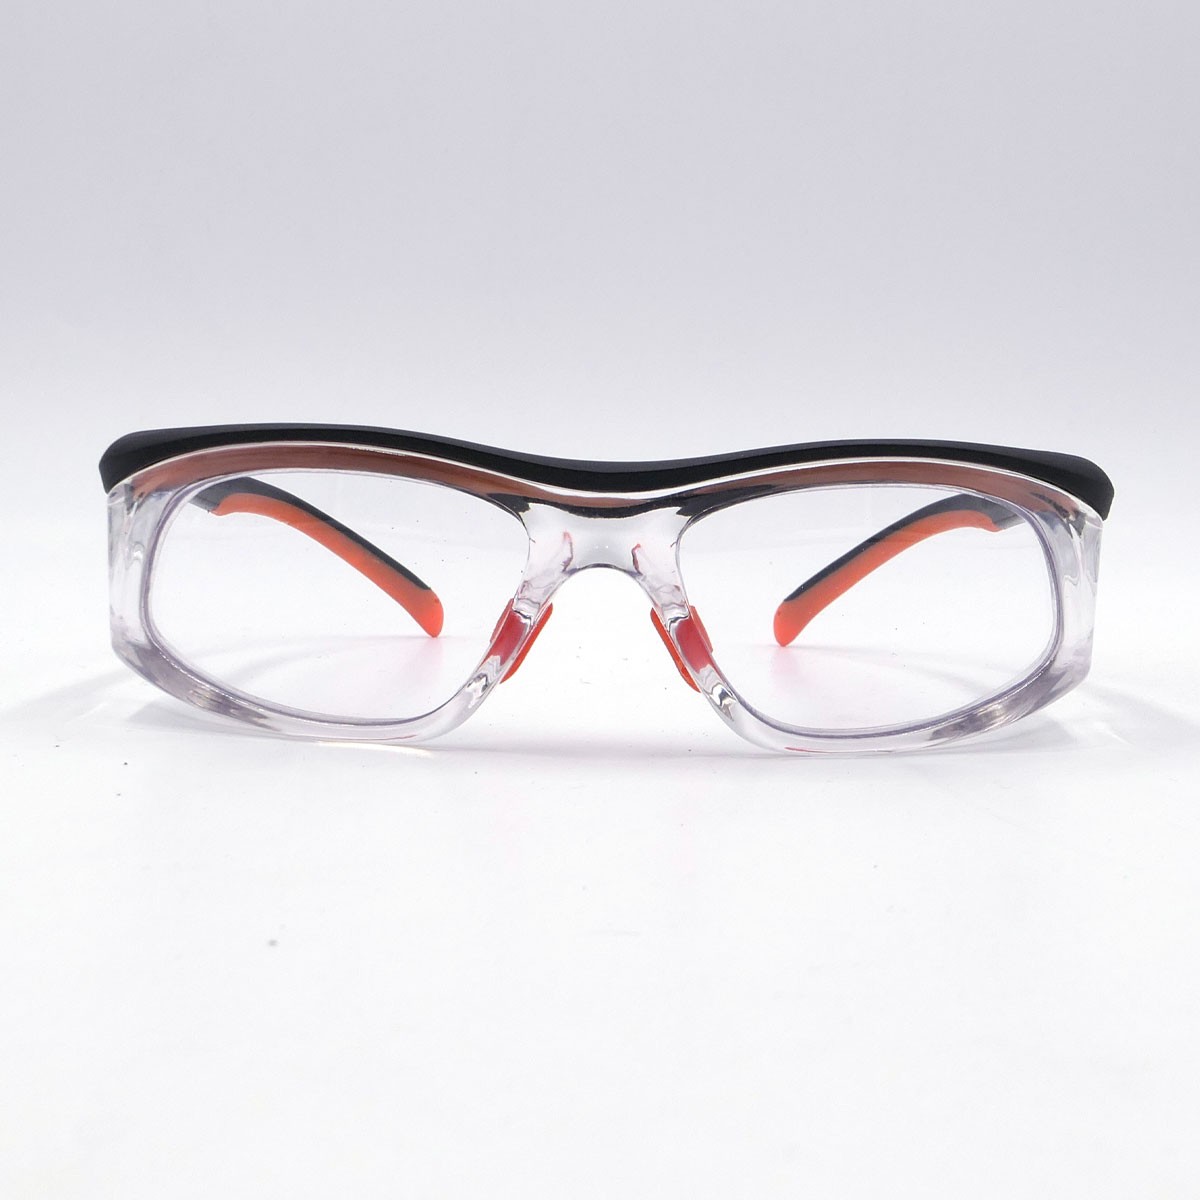 護目鏡,可更換度數鏡片的防護眼鏡